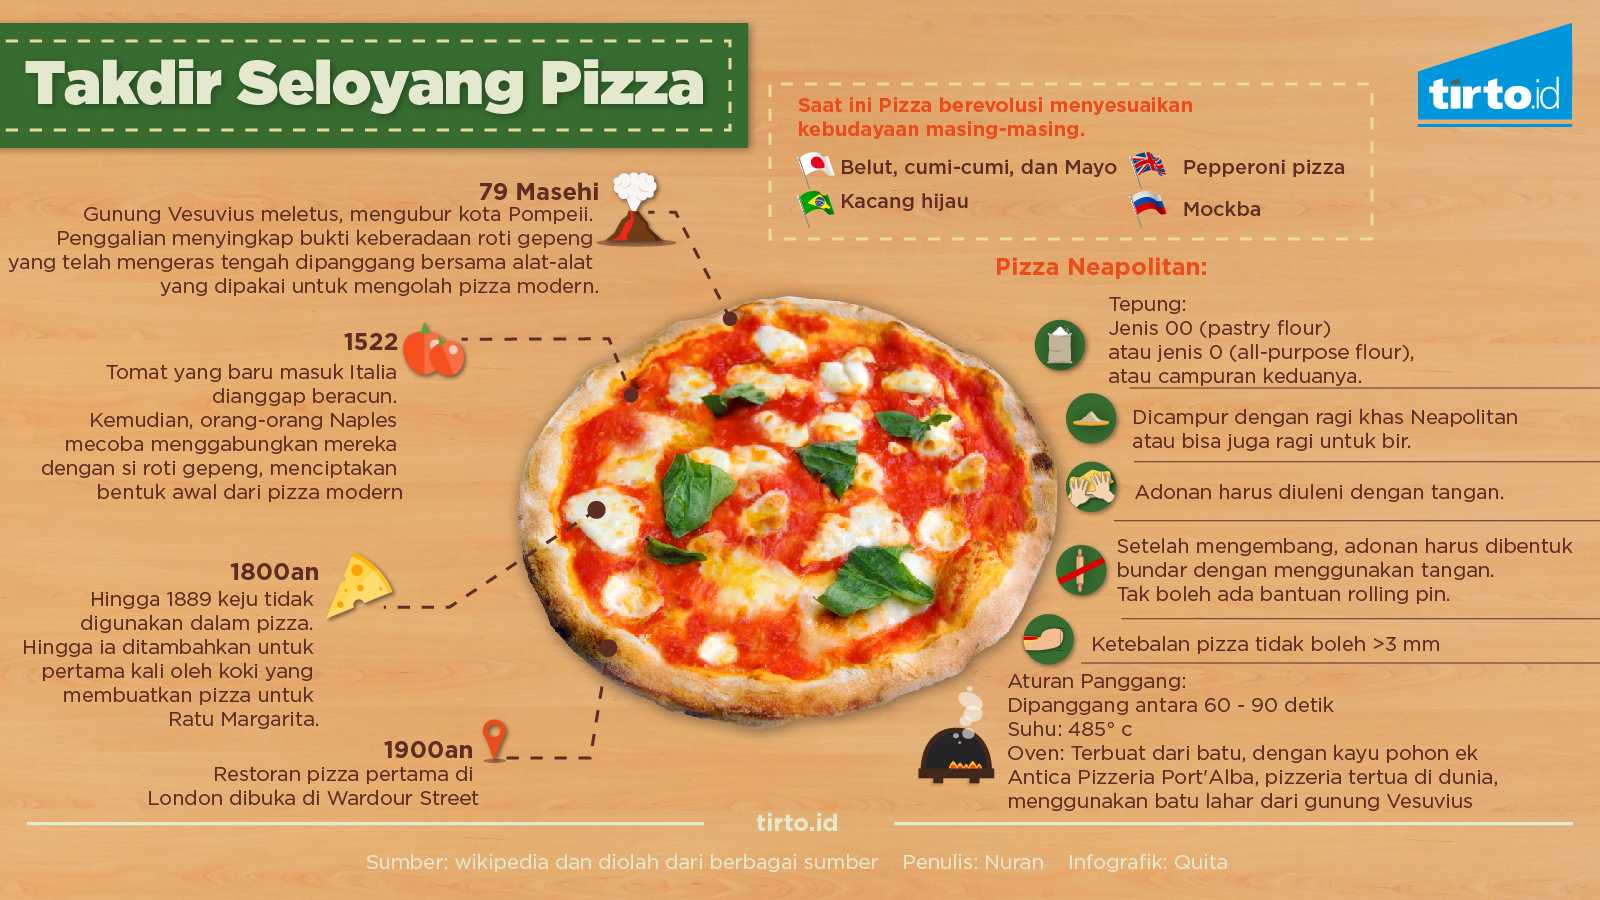 Рецепт пиццы на английском языке с переводом. Рецепт приготовления пиццы пепперони. Технология приготовления пиццы пепперони. Рецепт пиццы пепперони картинки. Этапы приготовления пиццы.